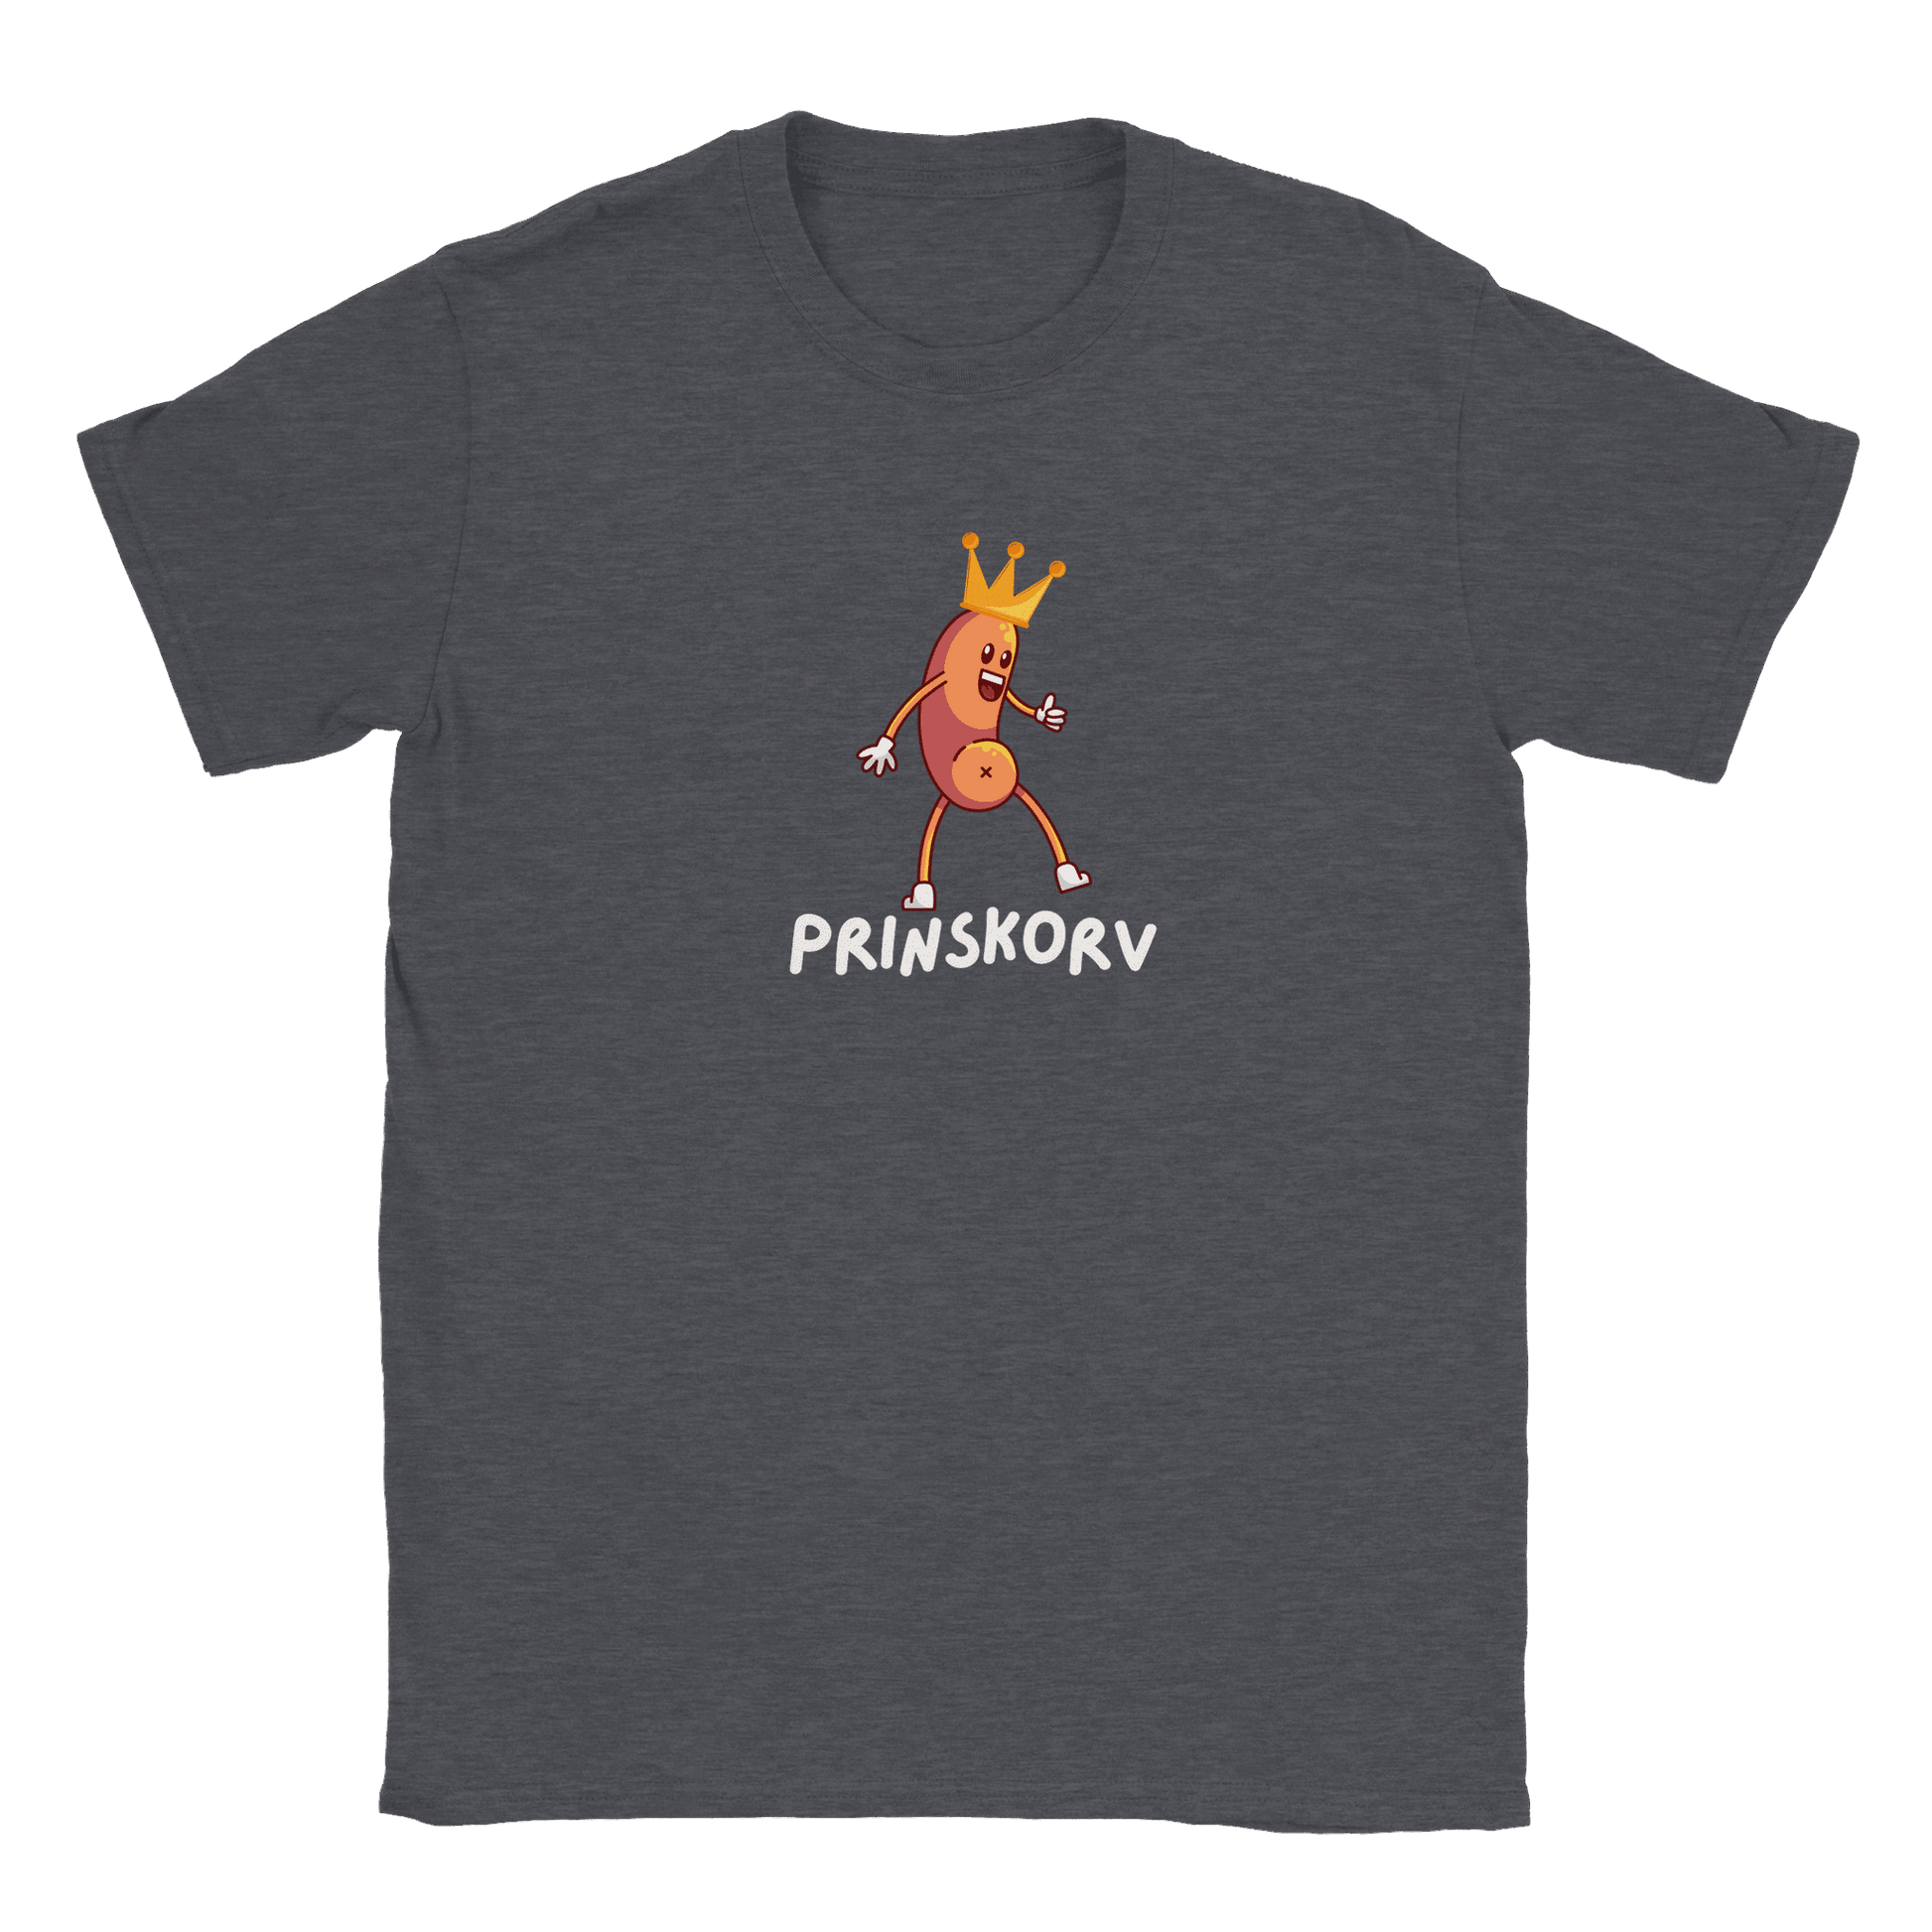 Prinskorv - T-shirt Mörk Ljung